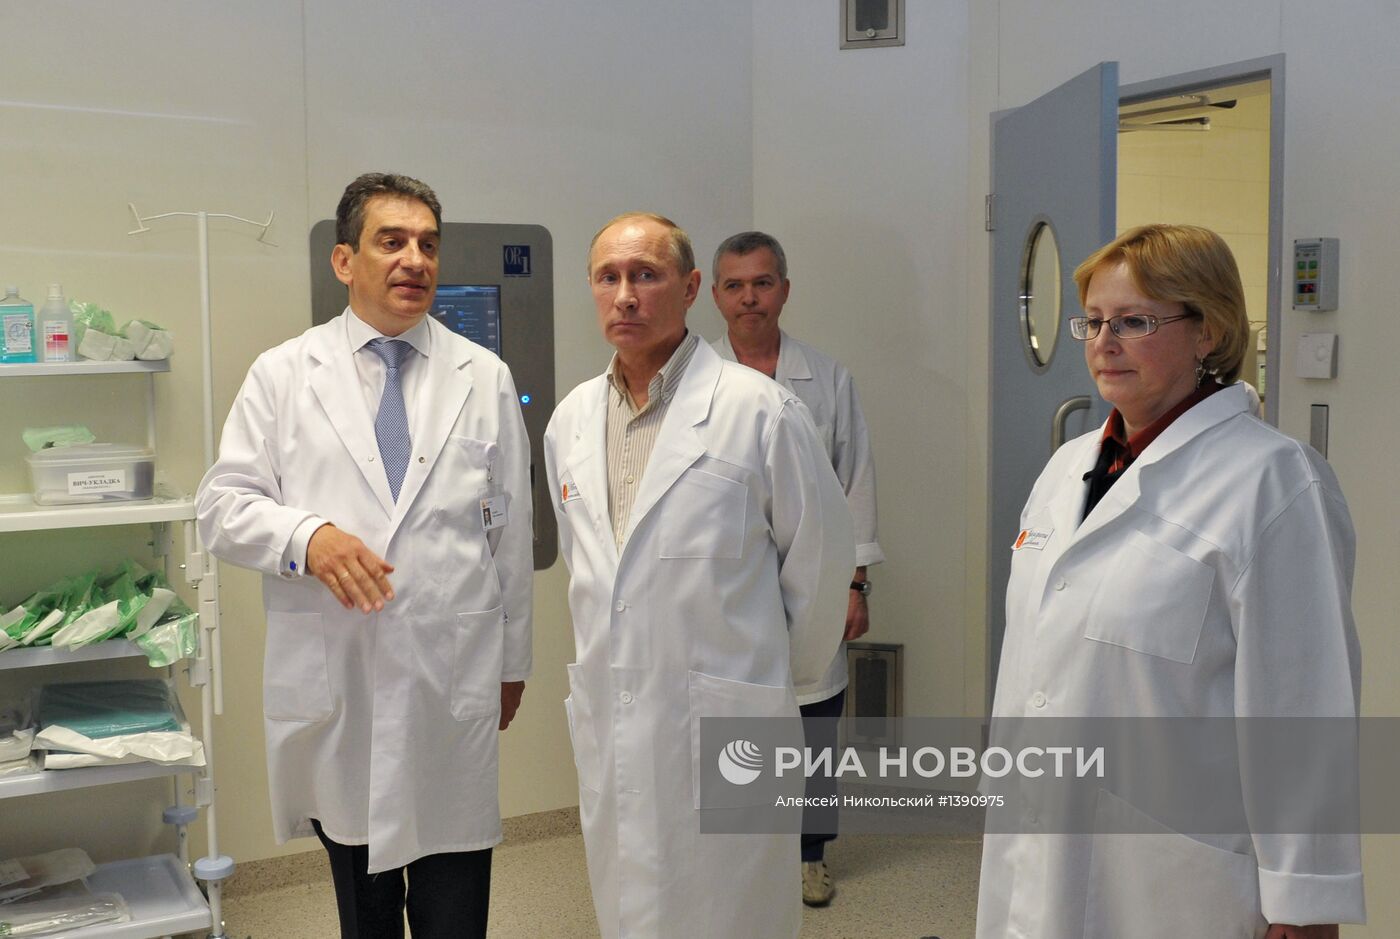 В.Путин посетил госпиталь "Мать и Дитя" в Подмосковье